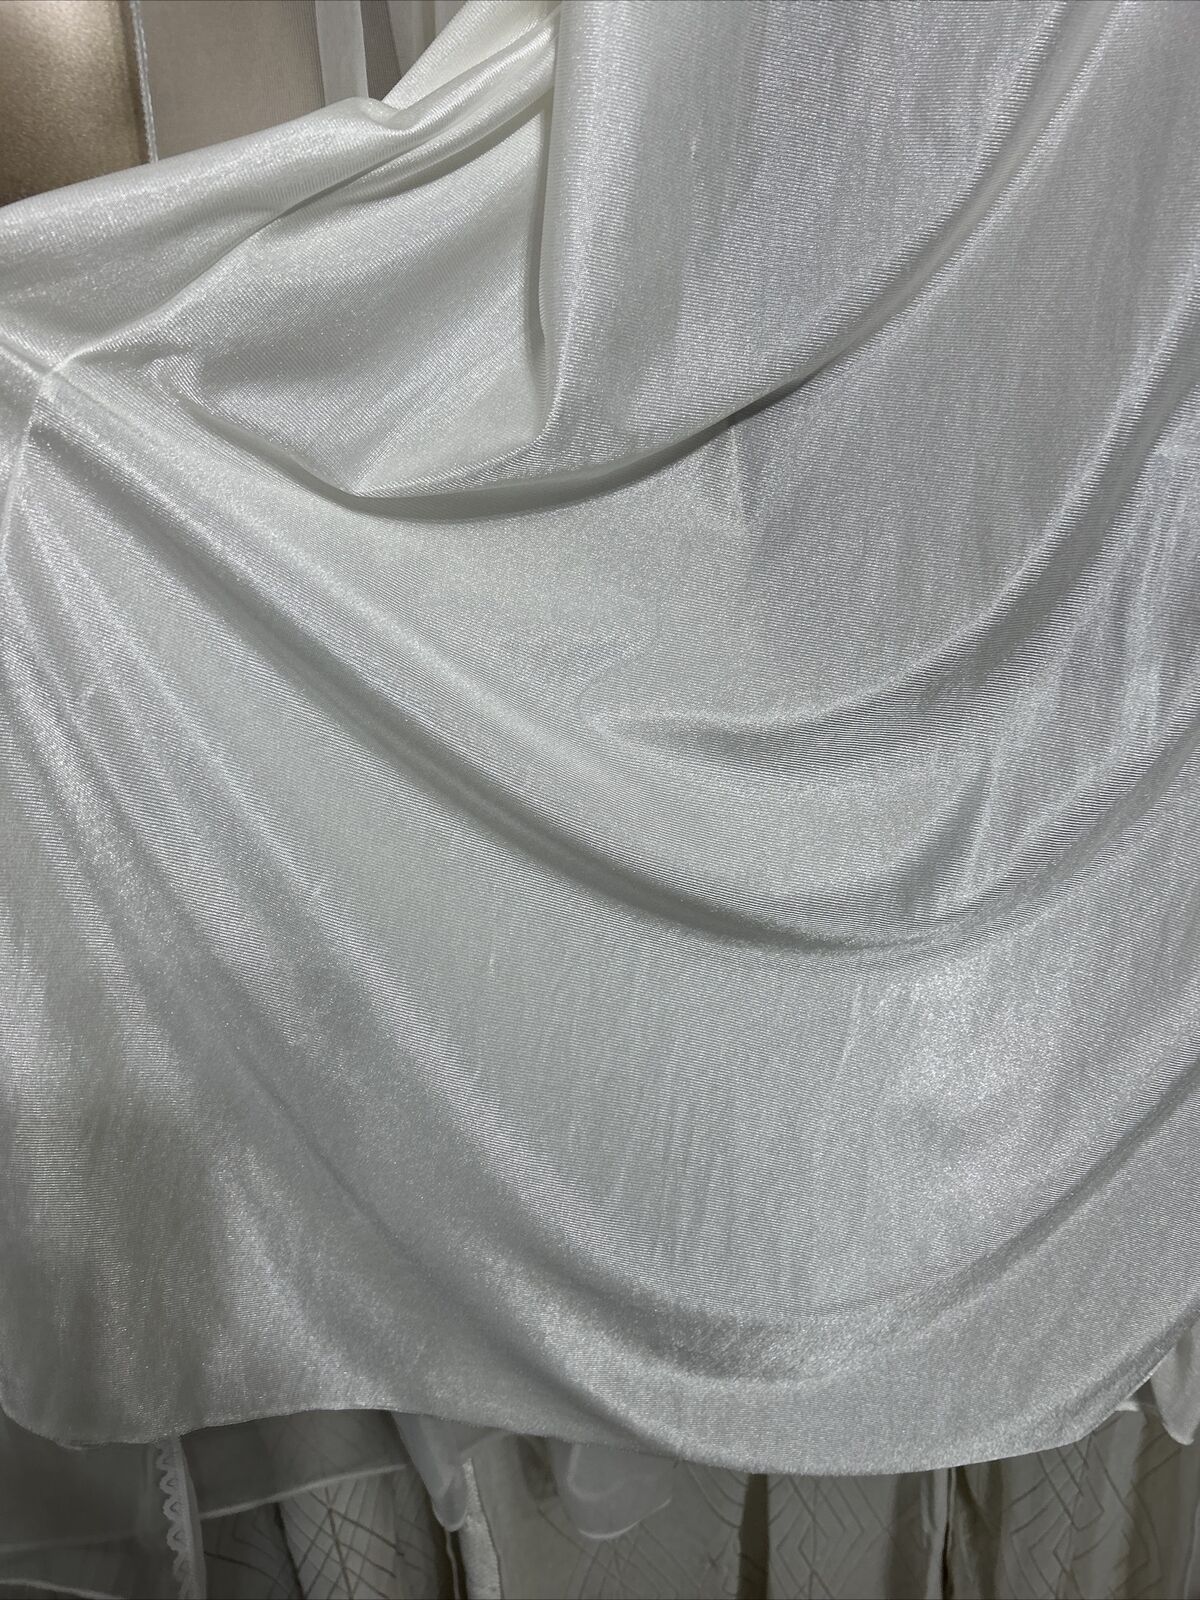 VTG L XL Bridal White Sheer Chiffon Nightgown Pei… - image 9